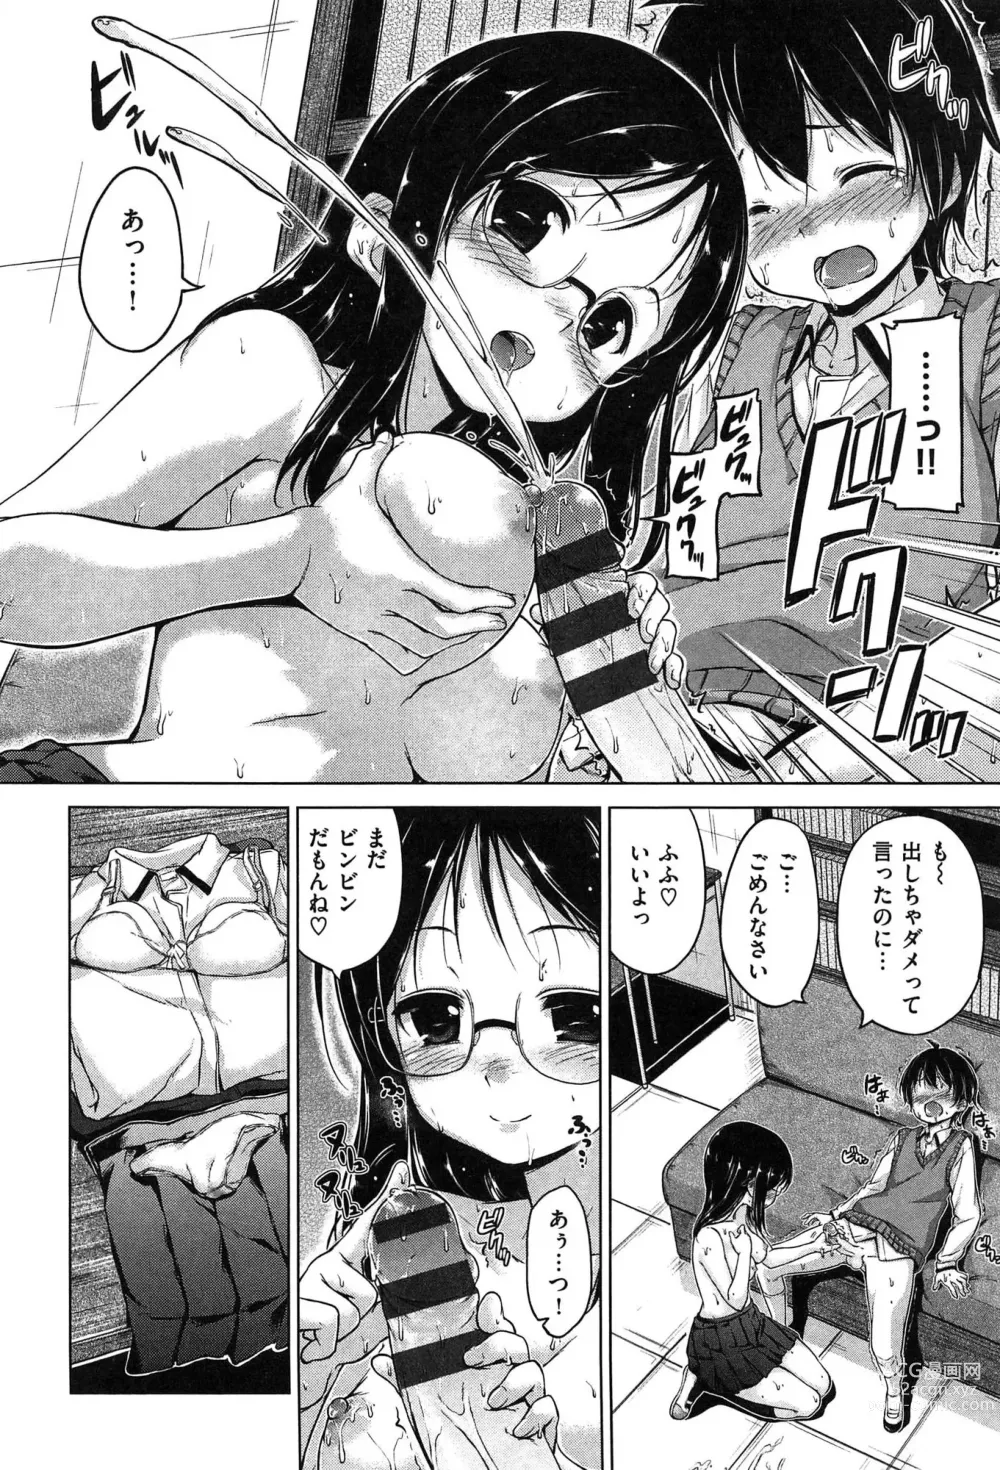 Page 204 of manga Kira Kira